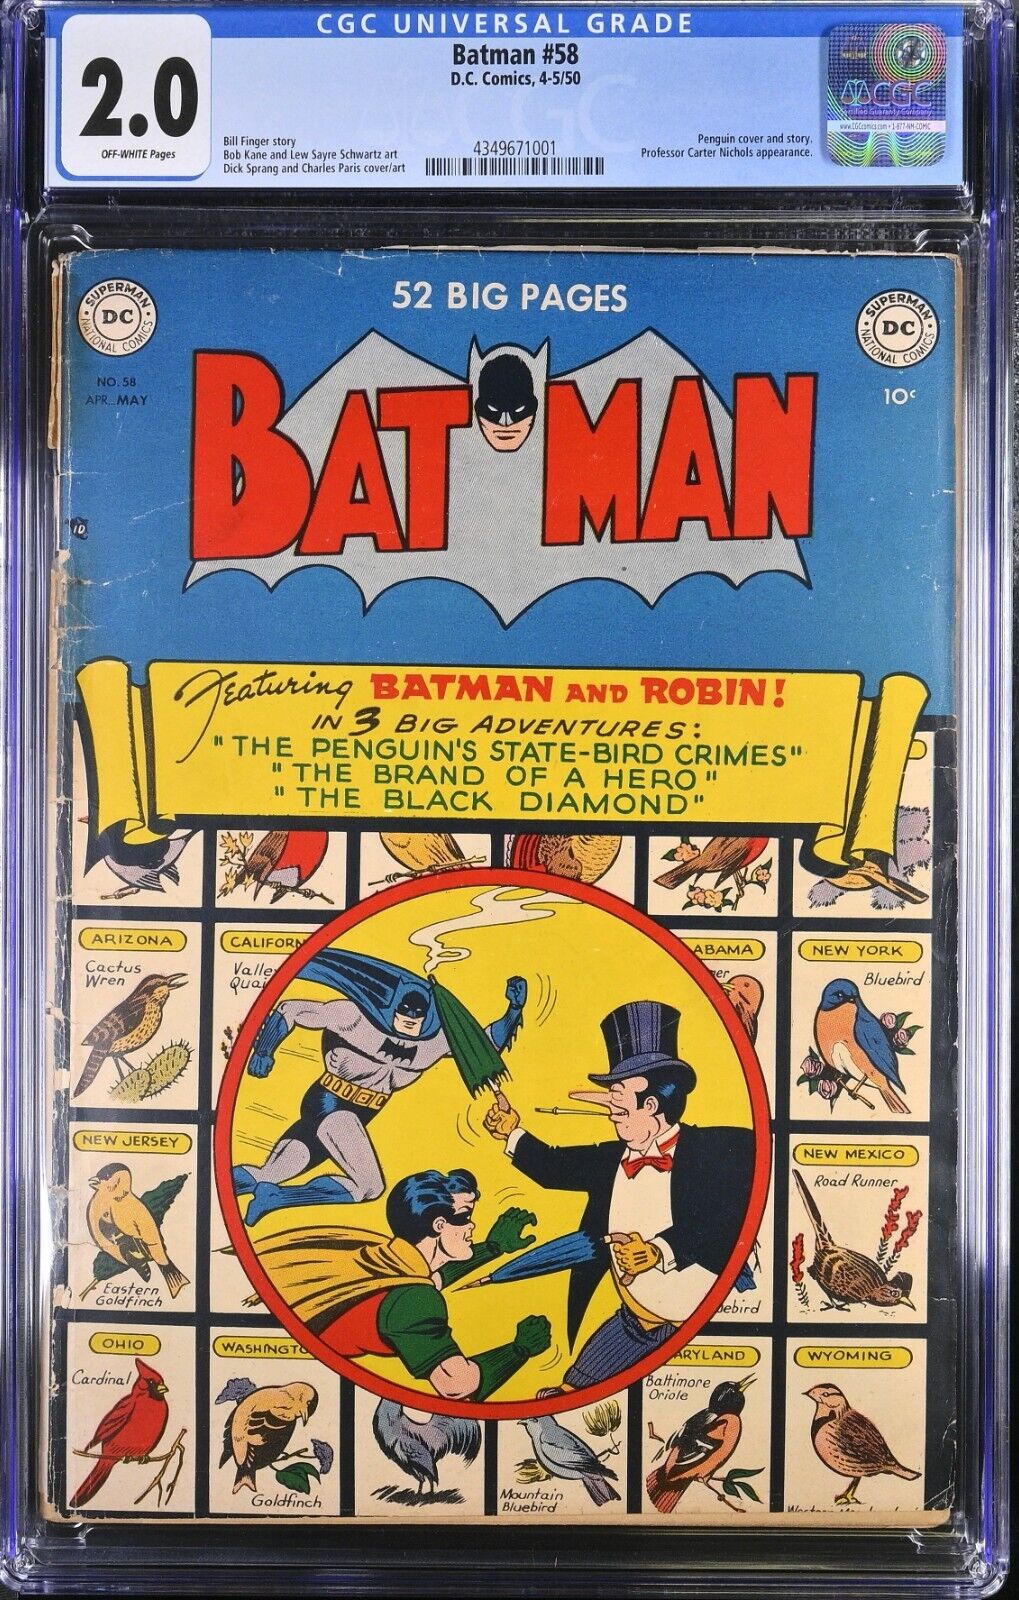 Batman #58 (Apr 1950-May 1950, D.C. Comics) CGC 2.0 GD | 4349671001